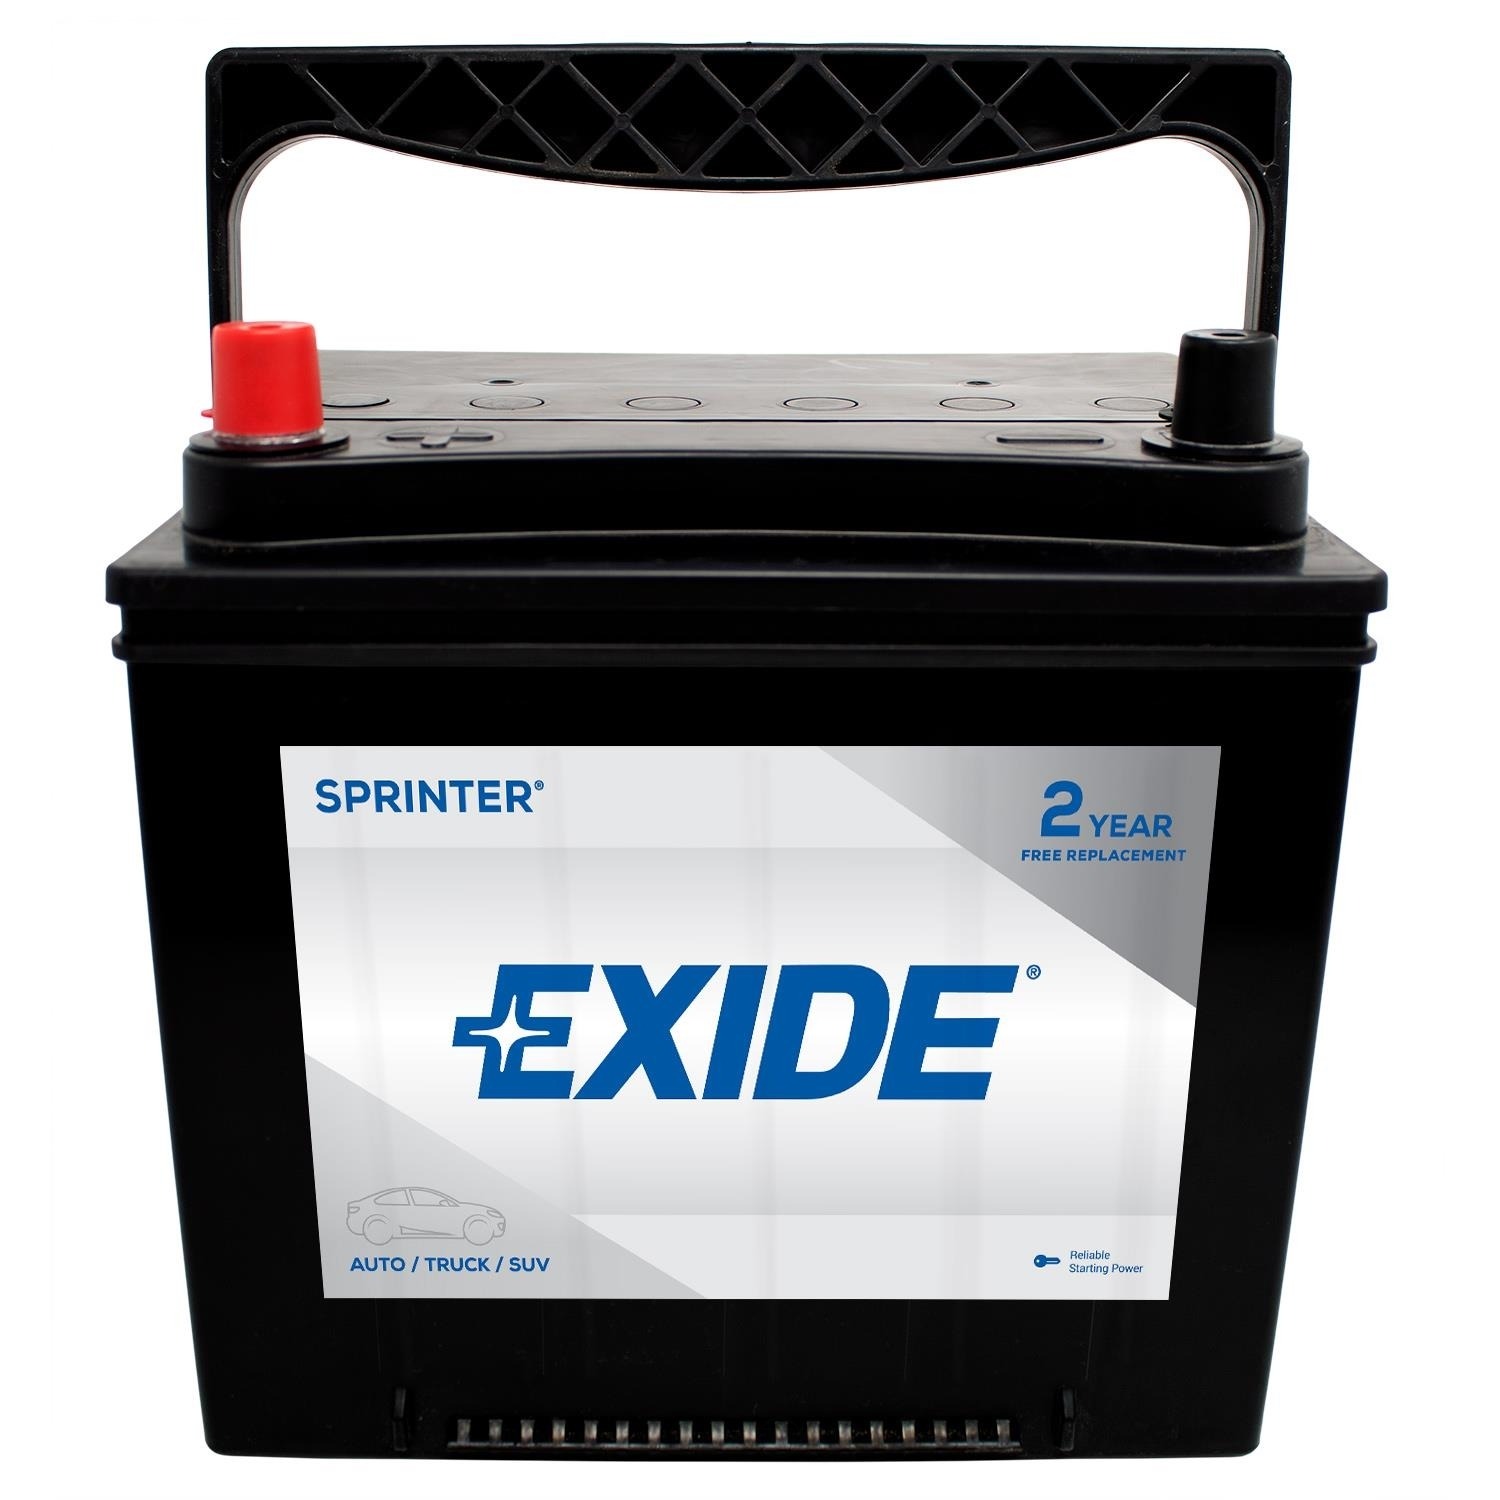 EXIDE BATTERIES - SPRINTER - CCA: 550 - EX1 S35